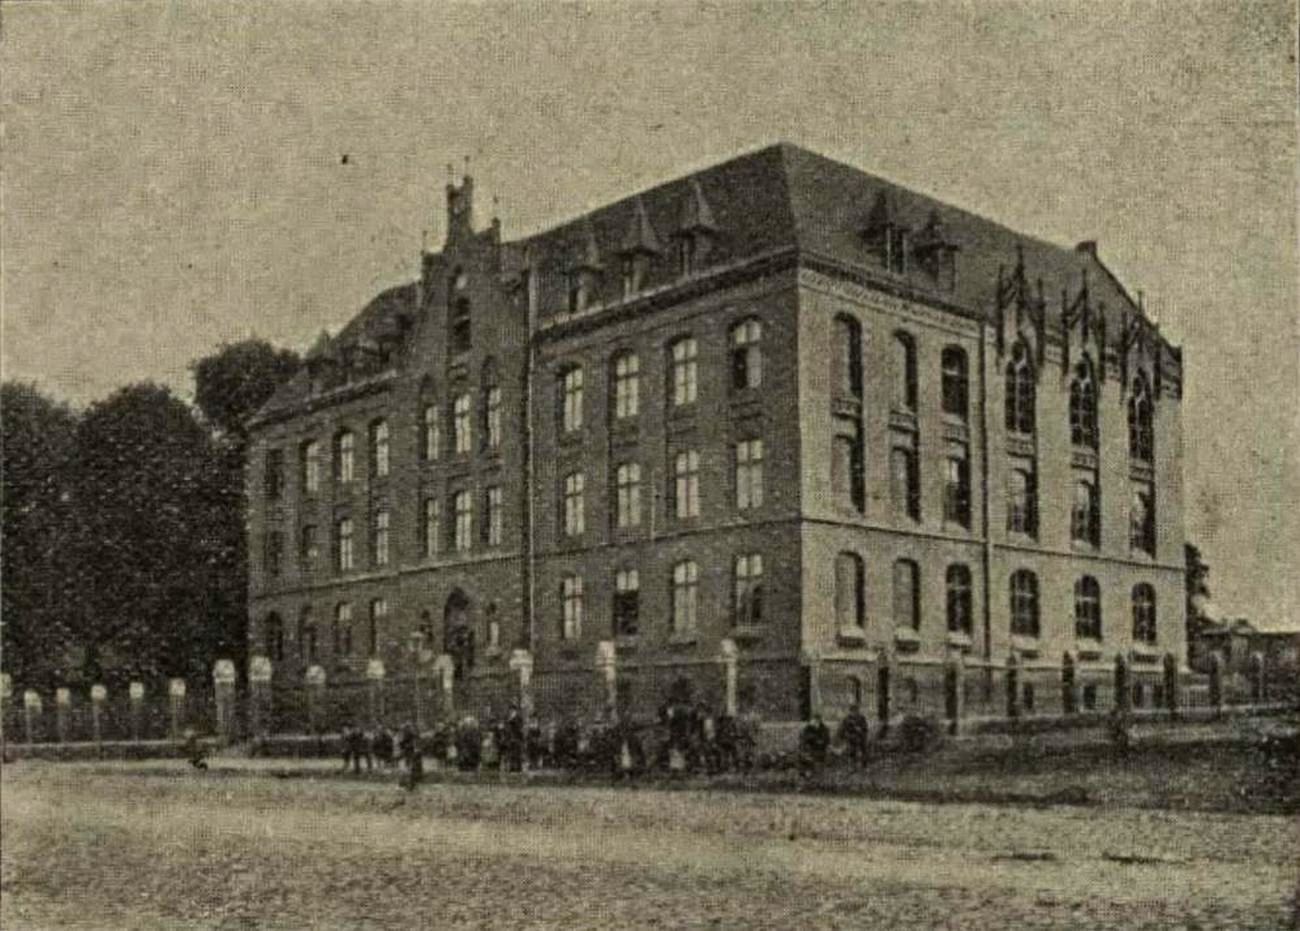 archiwalne zdjęcie przedstawiające budynek szkoły